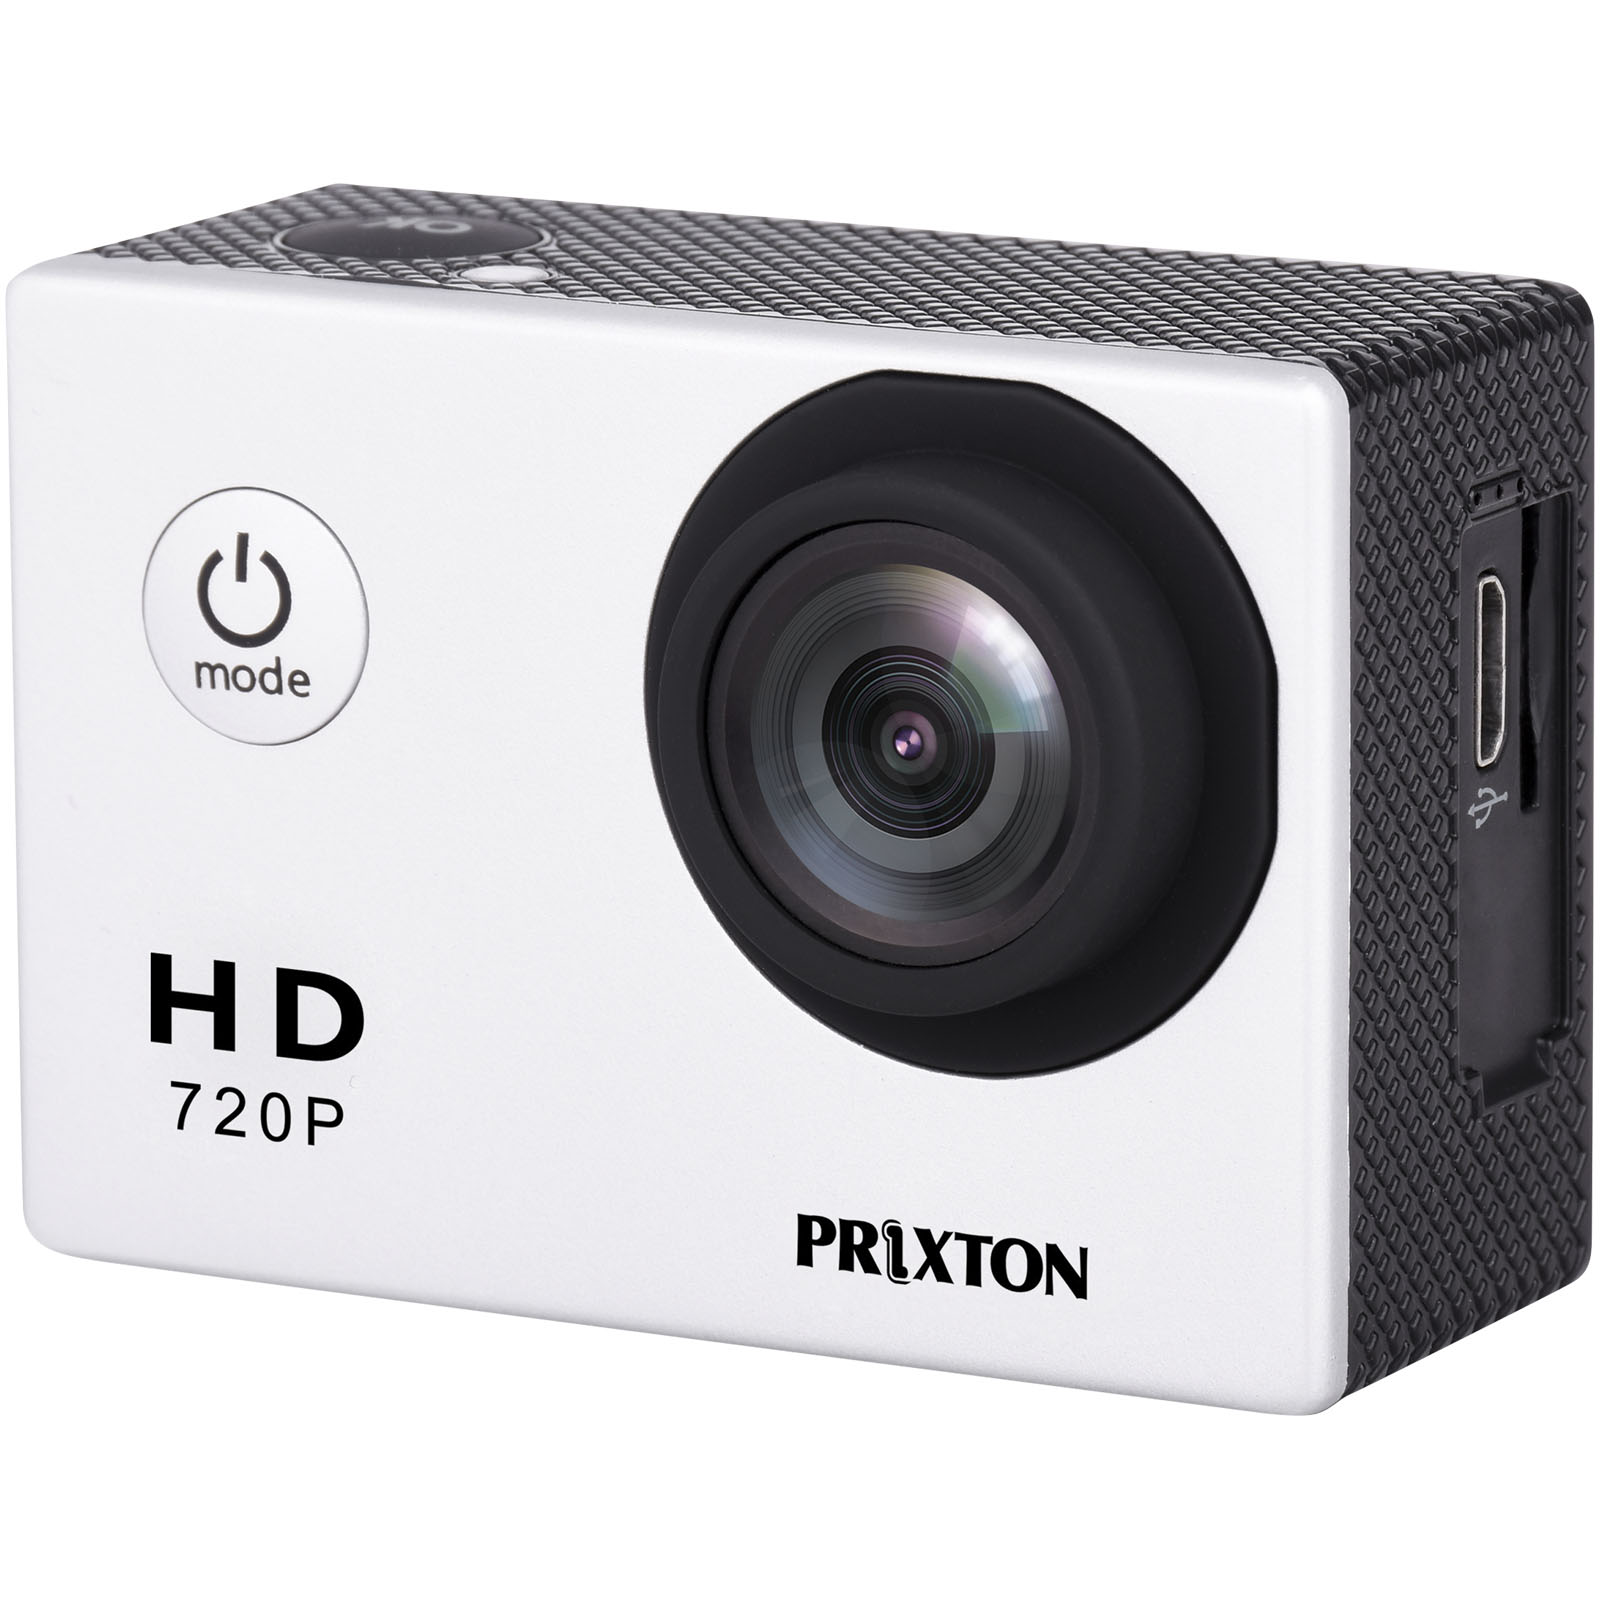 Advertising Cameras - Prixton DV609 Action Camera